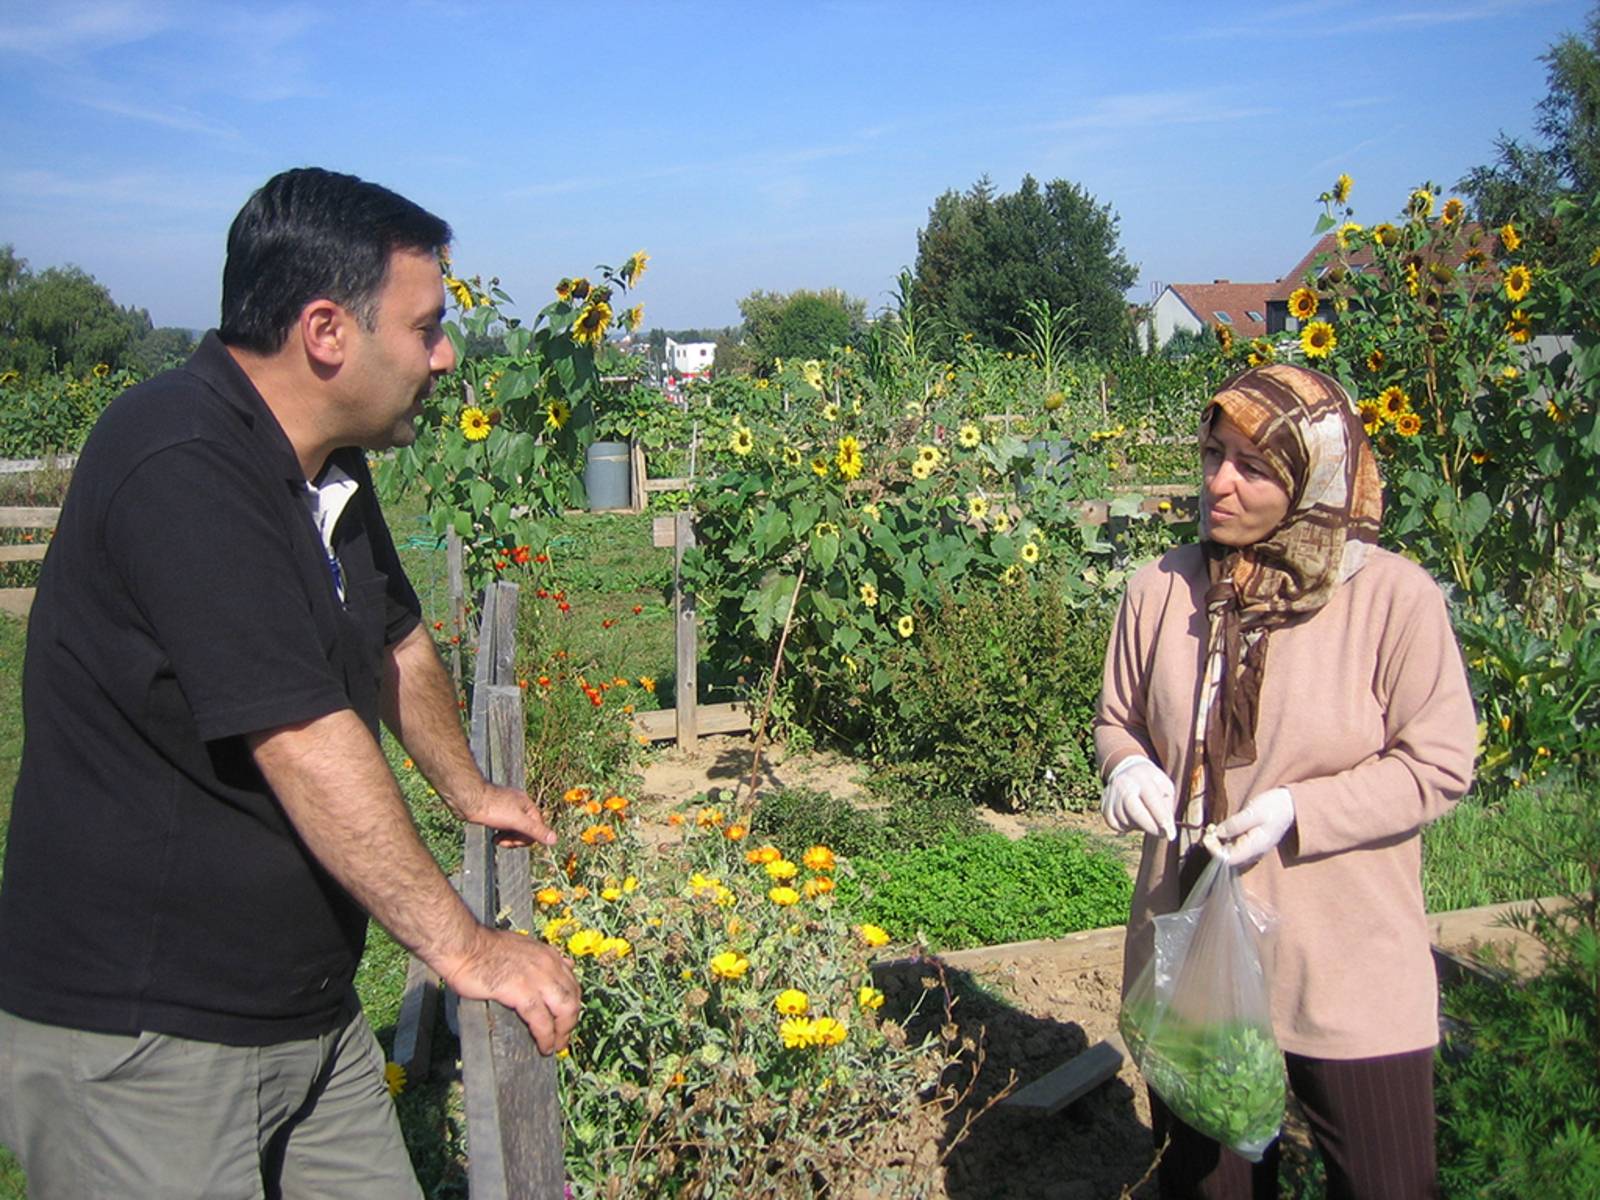 Eine Frau steht mit einem Beutel frisch geerntetem Gemüse in einem Kleingarten und unterhält sich über den Gartenzaun mit einem Mann.